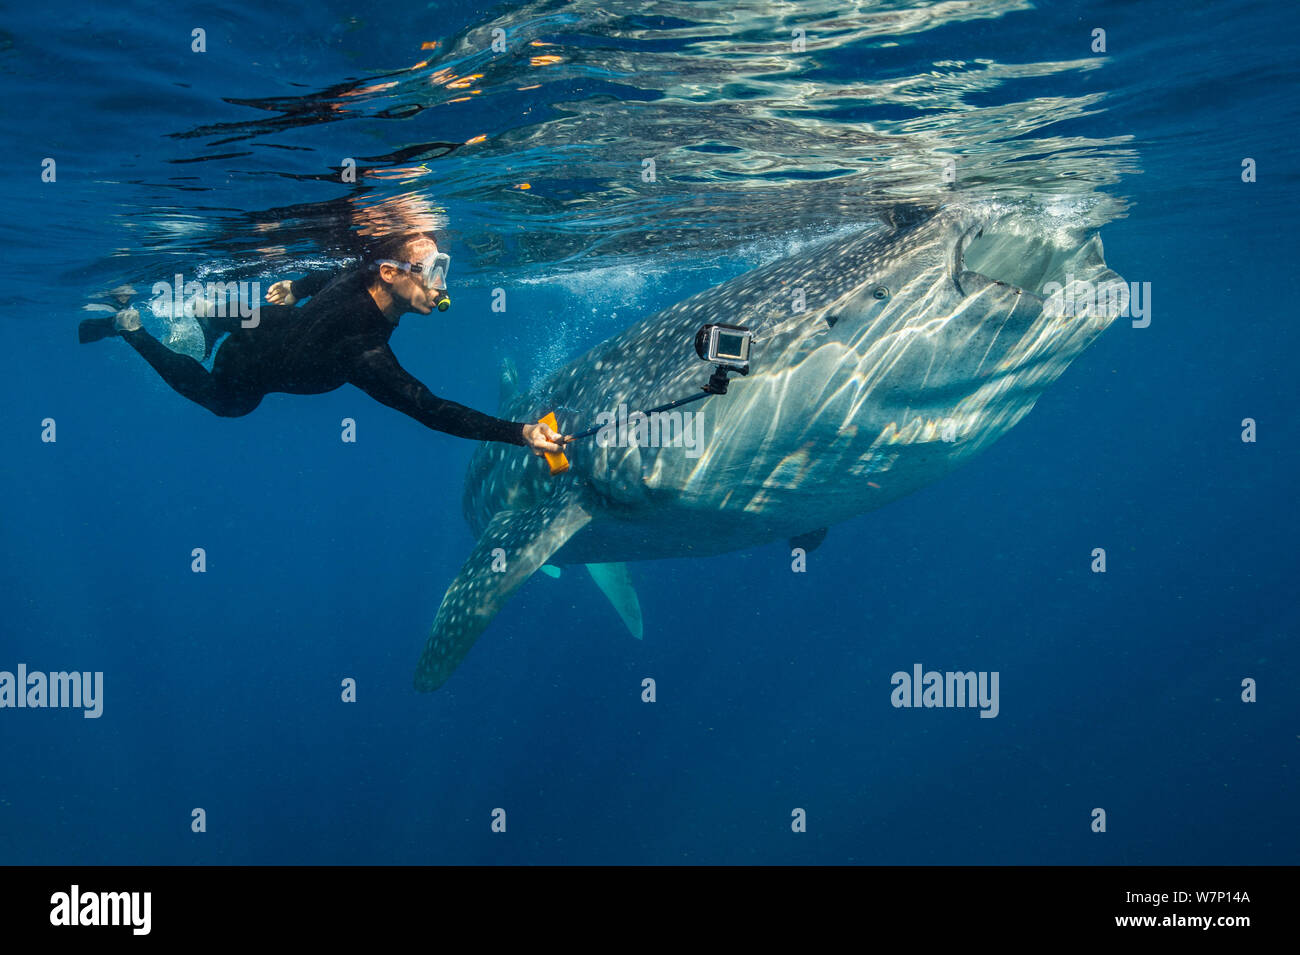 Ein schnorchler Filme selbst Schwimmen mit einem Filter füttern Walhai (Firma IPCON typus), Isla Mujeres, Quintana Roo, Yucatan, Mexiko, Karibik. Stockfoto